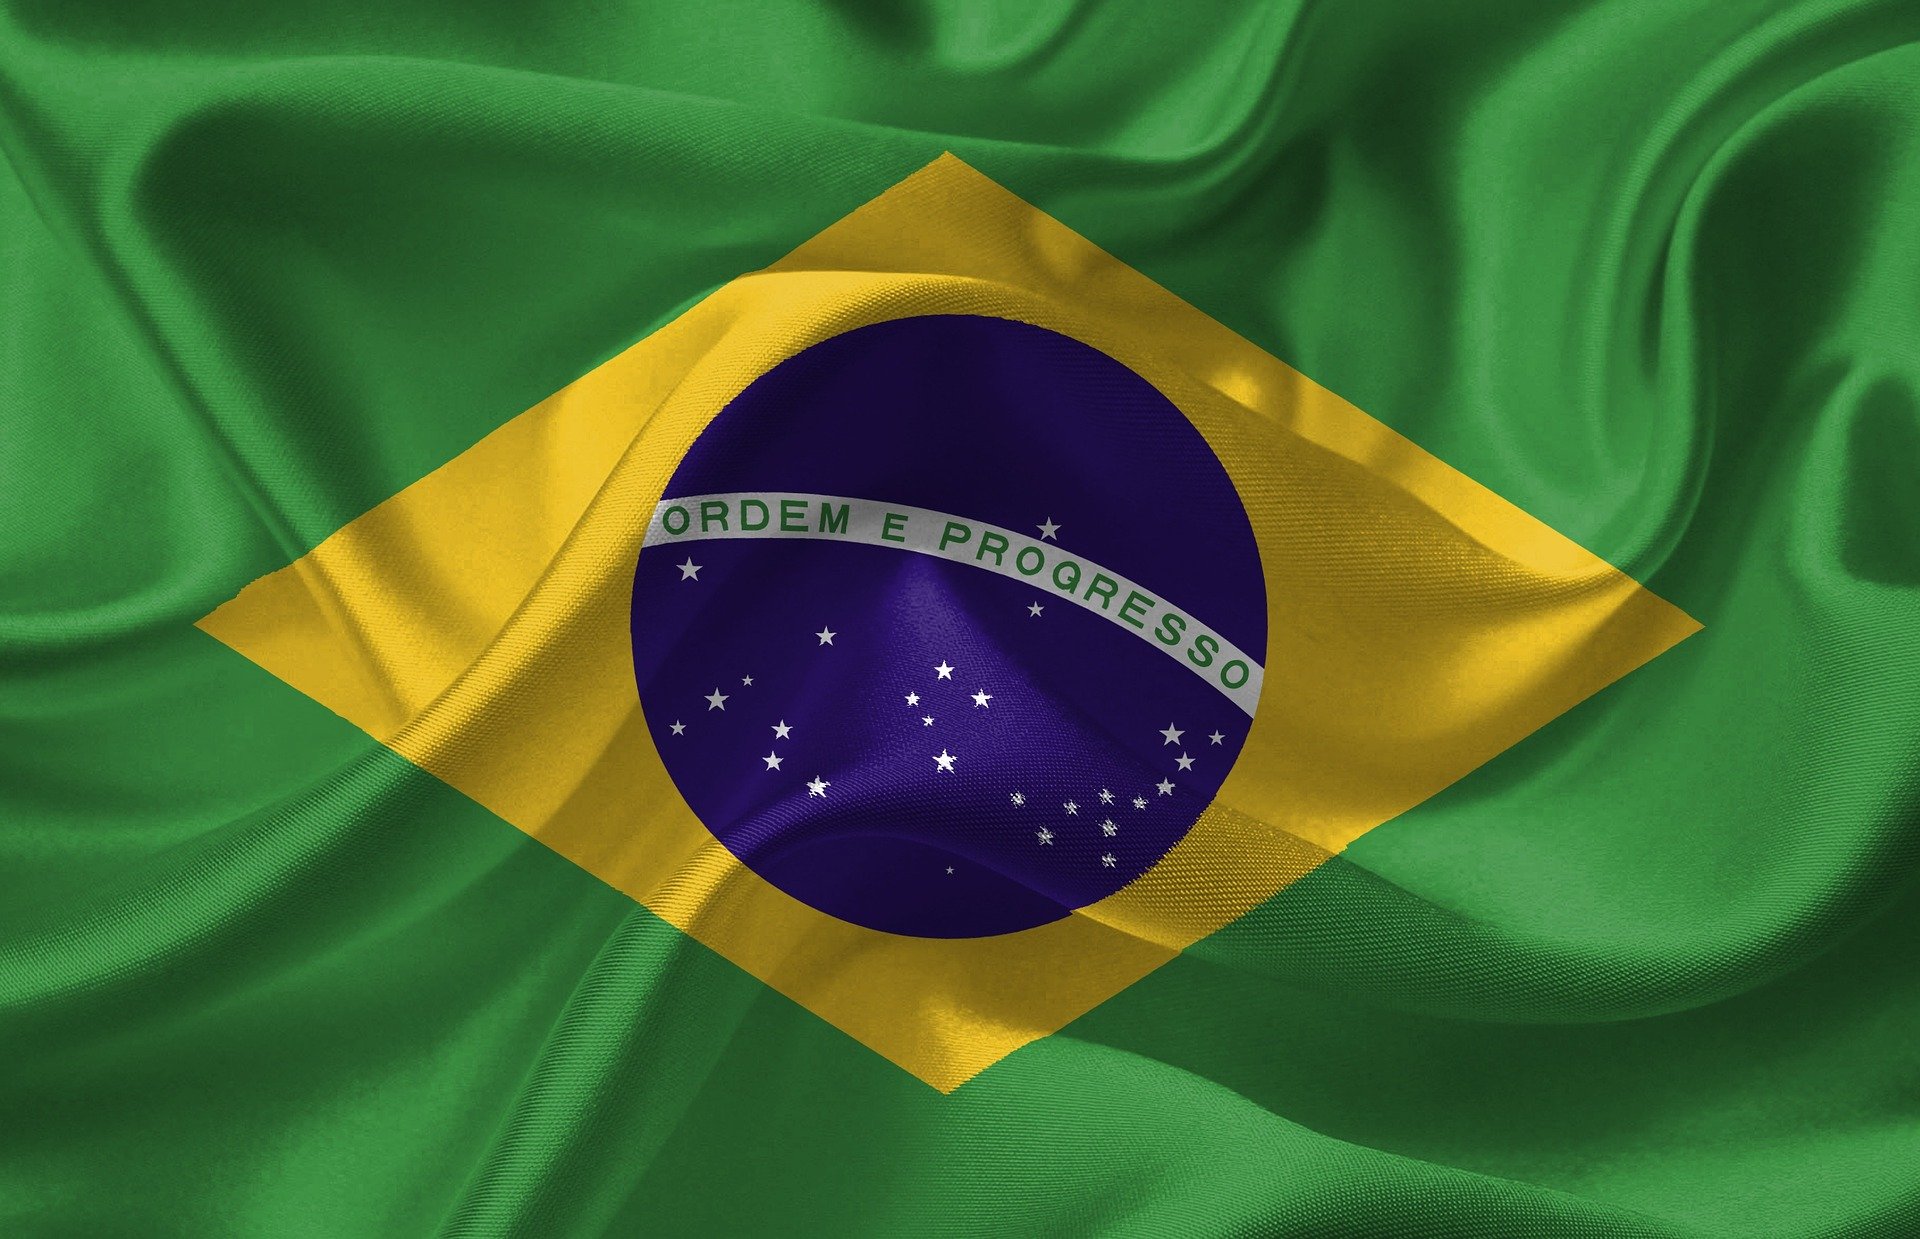 Quantos pentagramas branco tem na bandeira do brasil